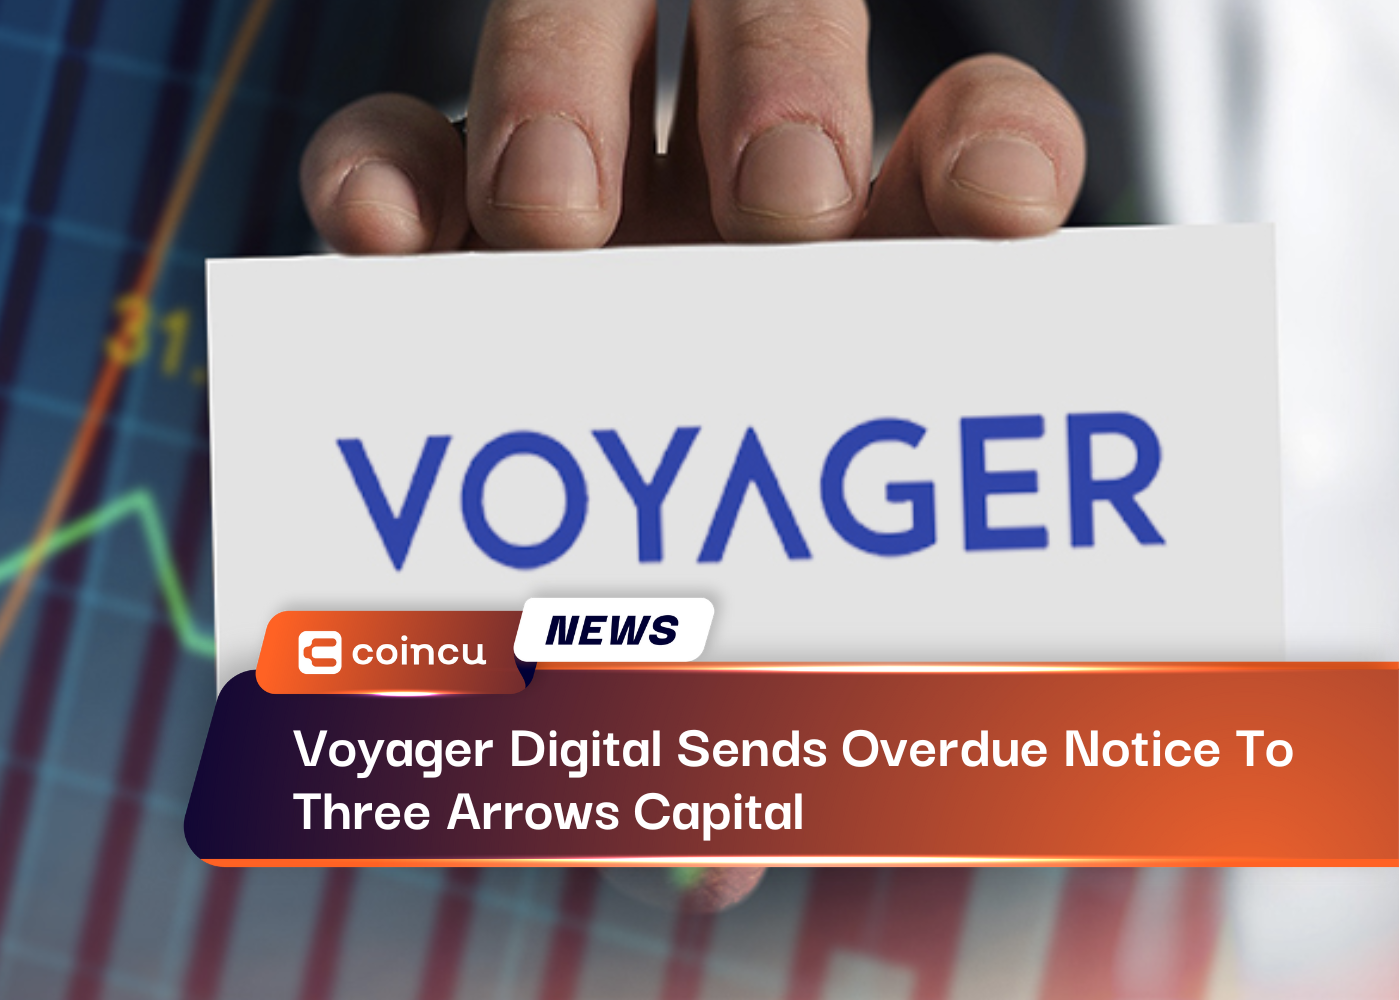 Voyager Digital envía un aviso vencido a Three Arrows Capital